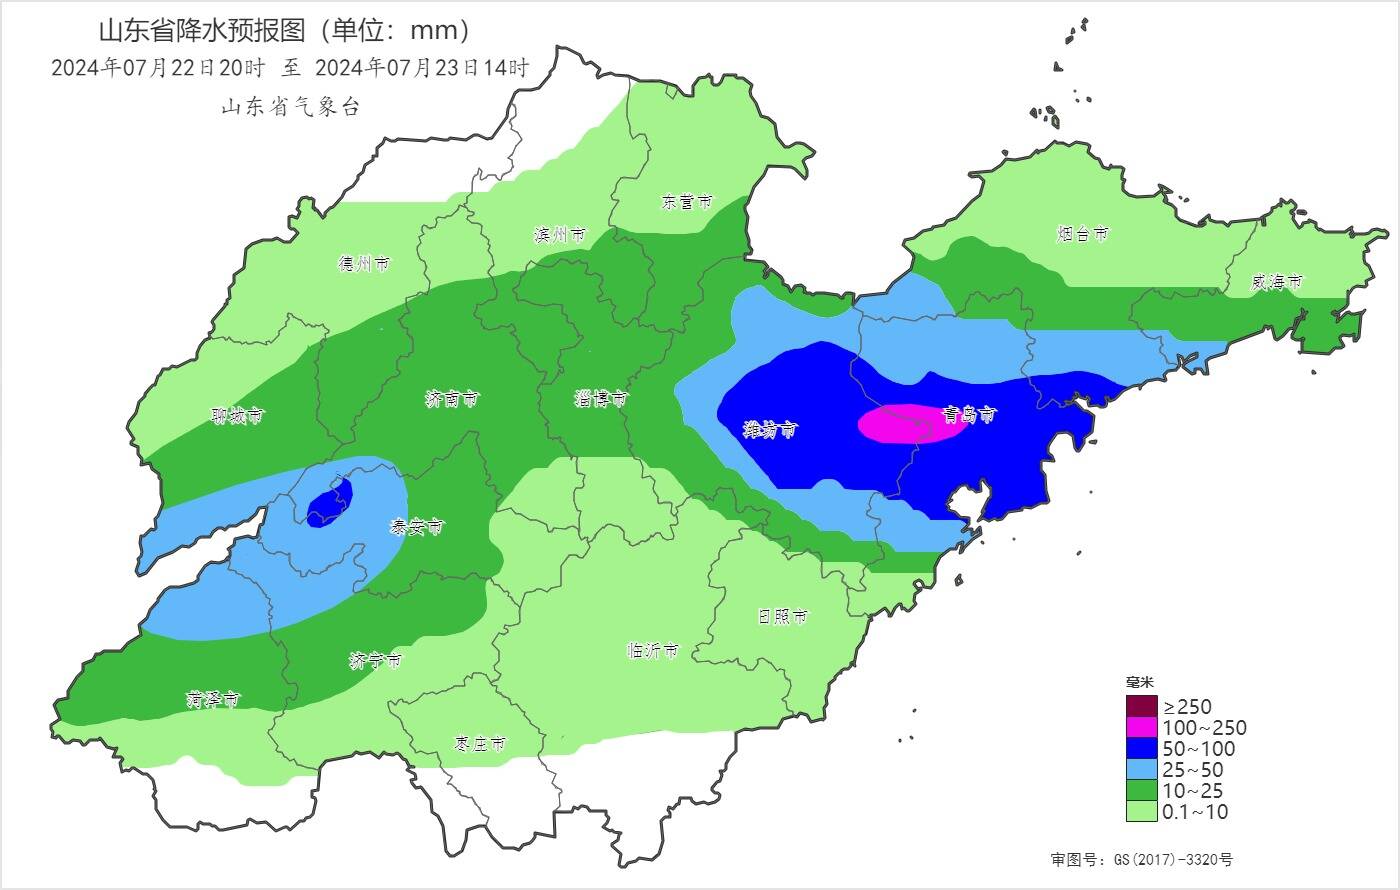 山东降级暴雨黄色预警为暴雨蓝色预警 潍坊、青岛等地局部仍有大暴雨